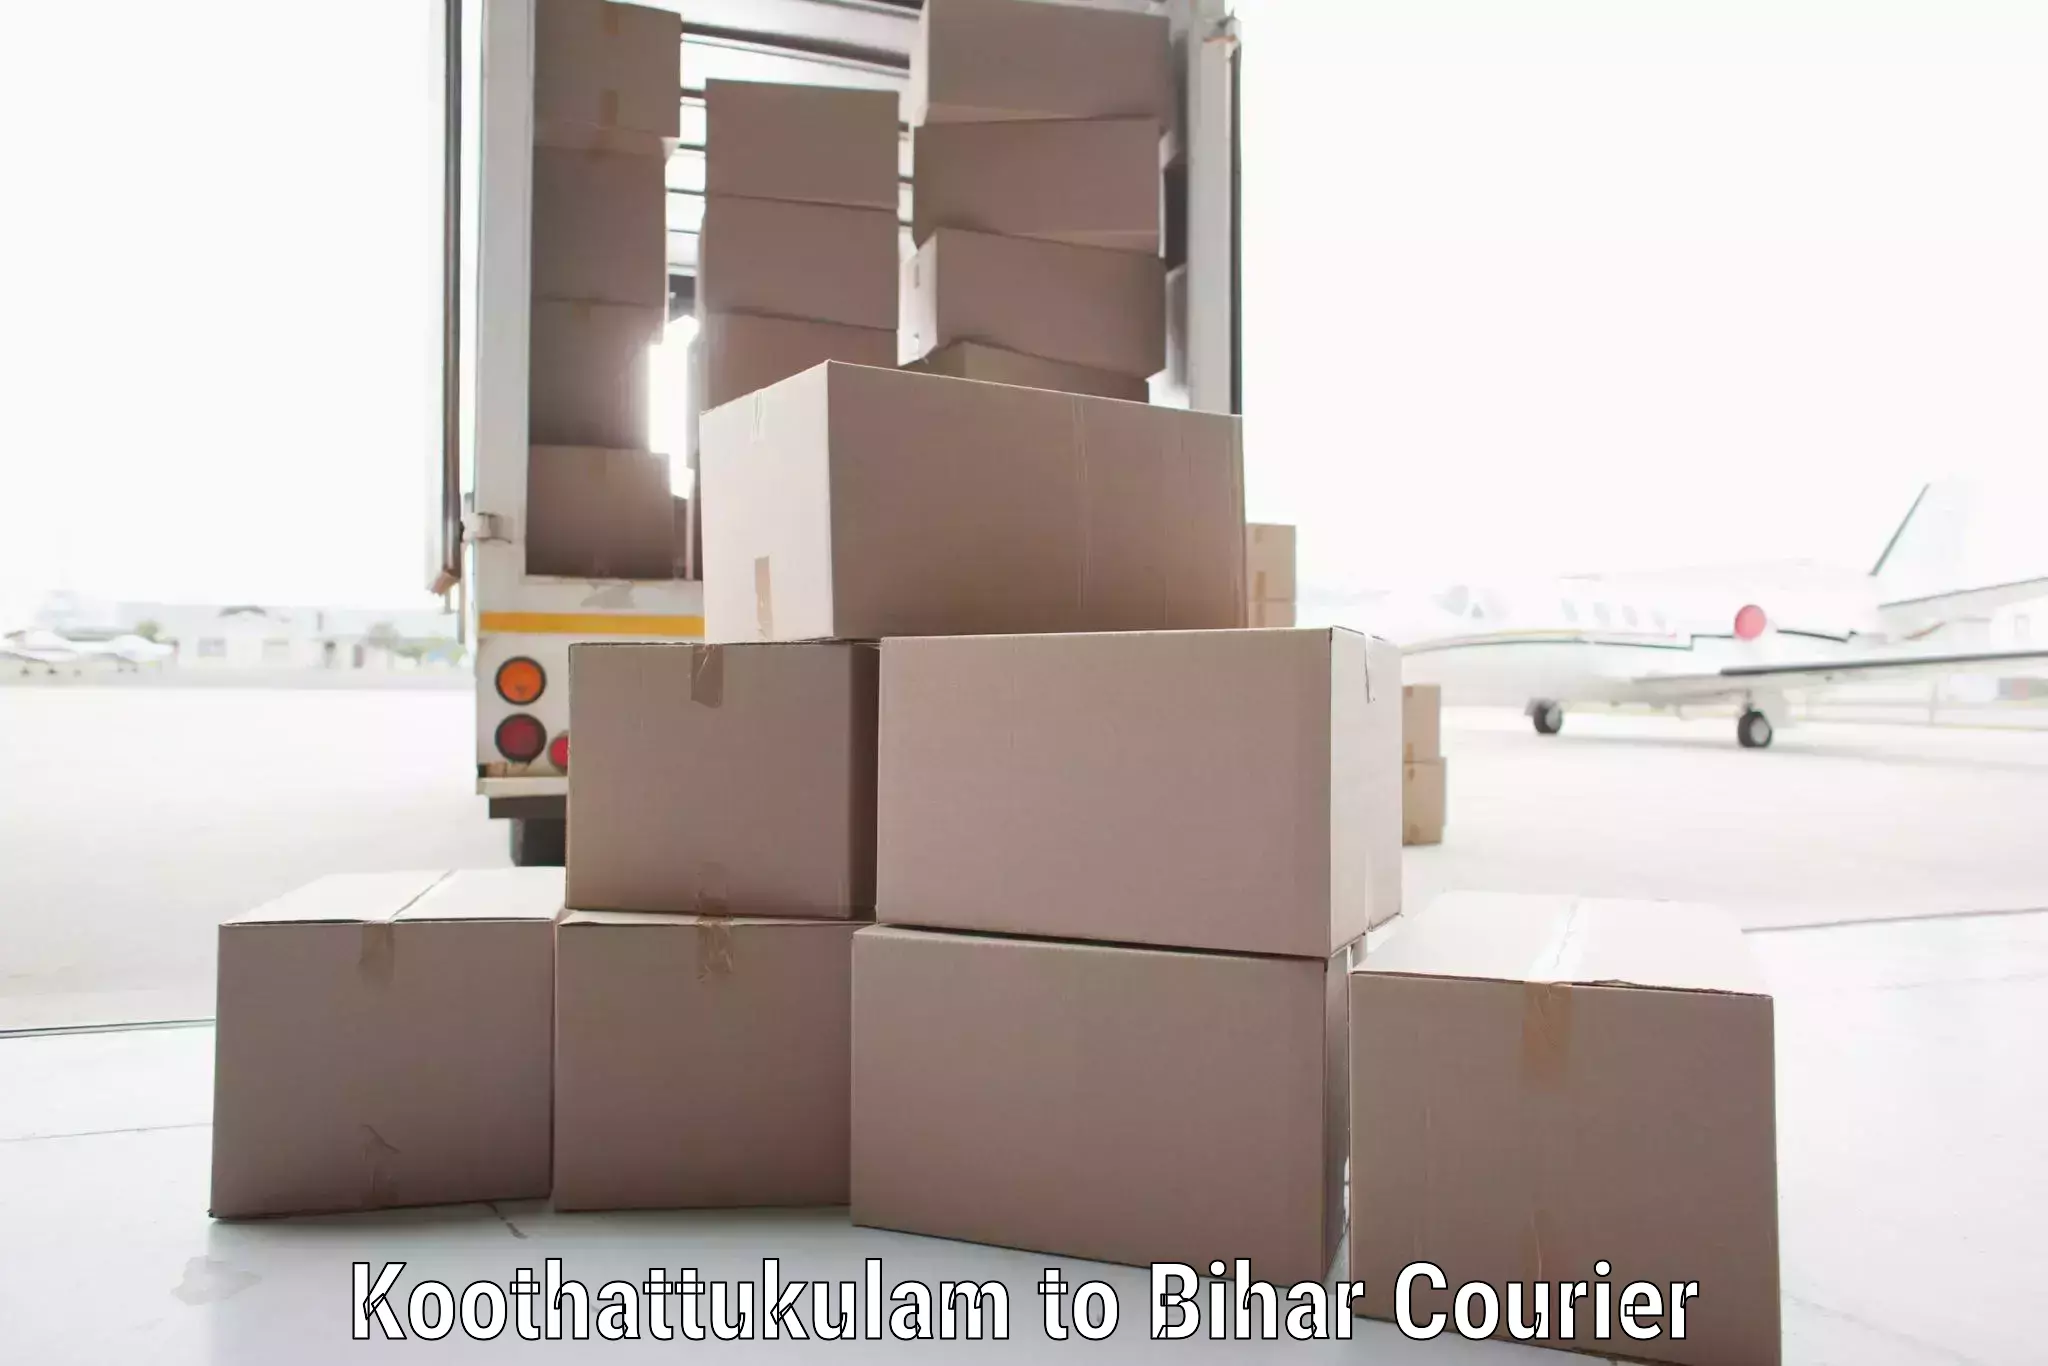 Modern delivery methods Koothattukulam to Bihar